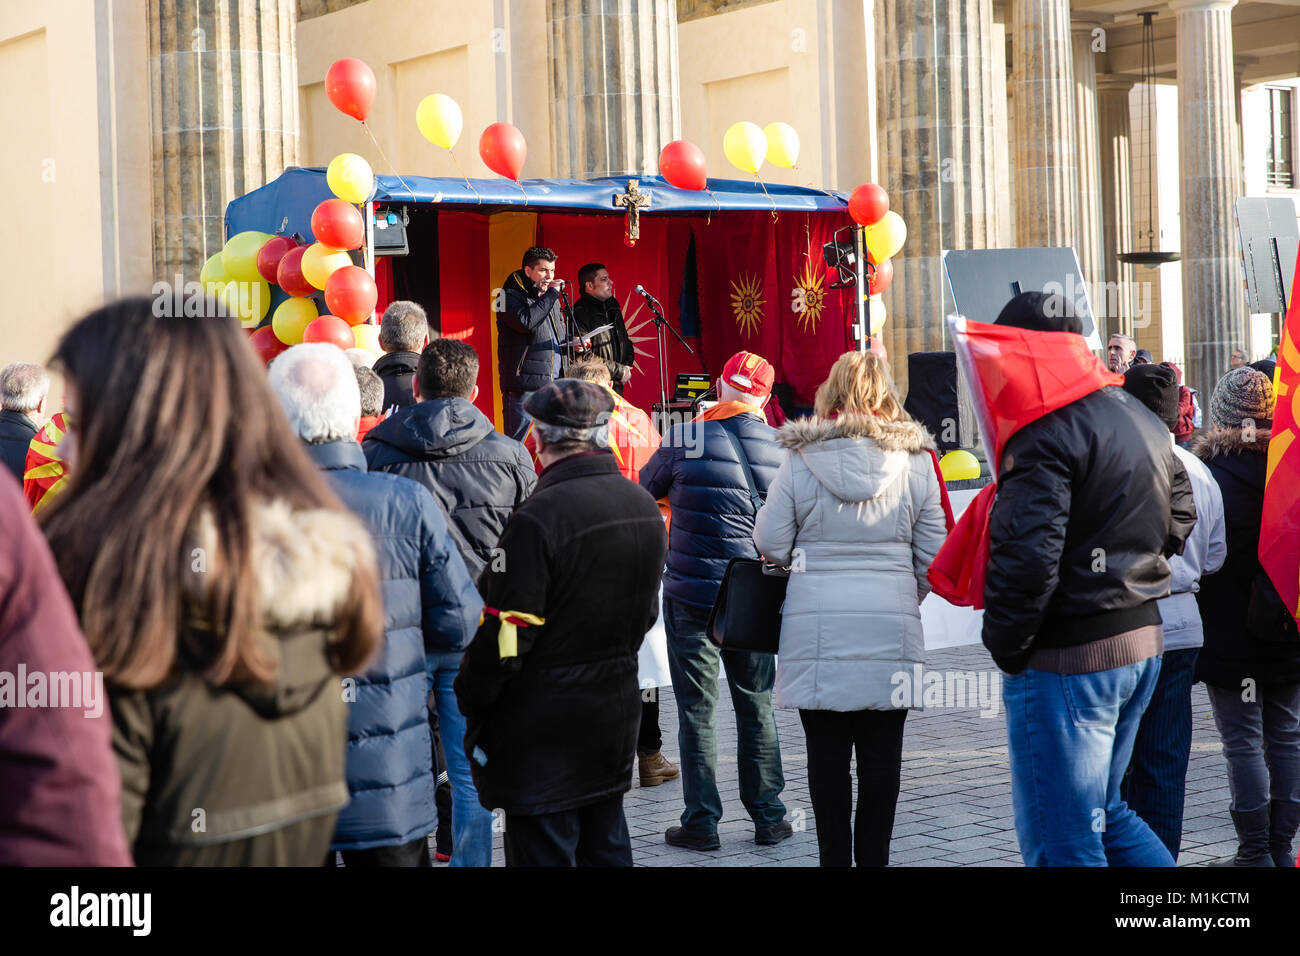 Mazedonier leben in Berlin die Inszenierung eines friedlichen Protest Missbilligung der mazedonischen Regierung Politik zu demonstrieren und ruft zur Einheit der Nation Stockfoto